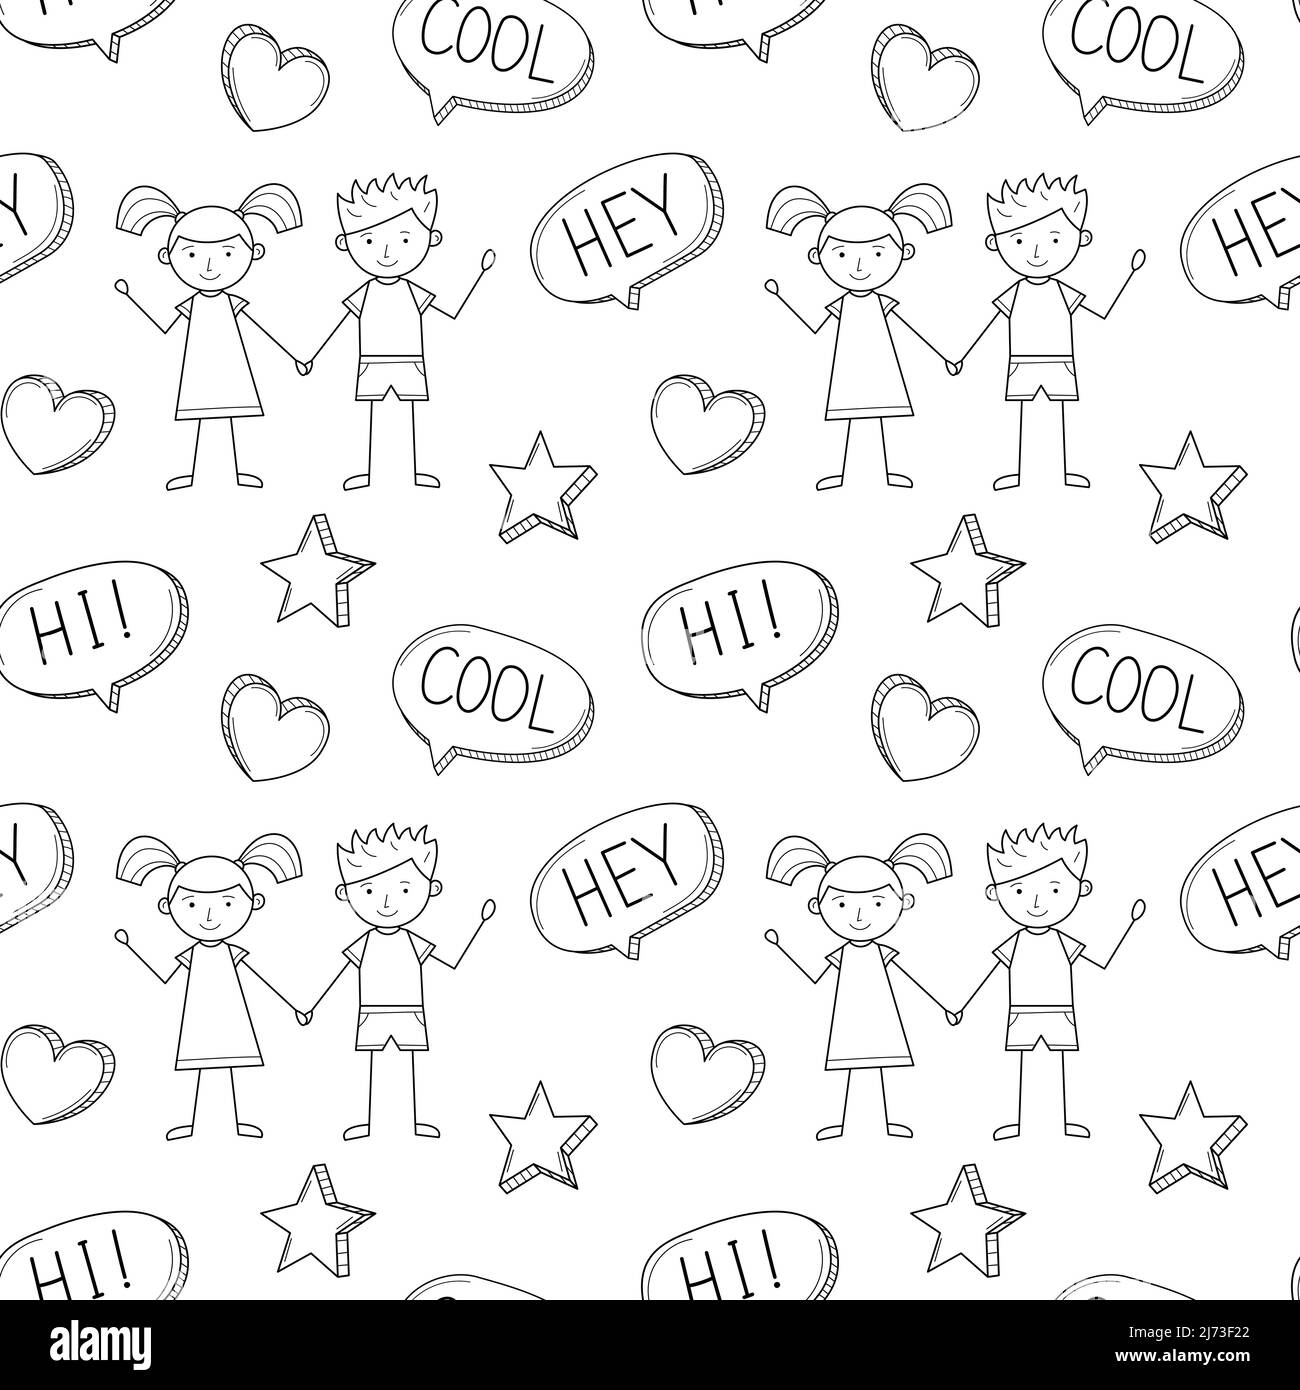 Eine einfache Schule nahtlose Muster mit einem niedlichen Jungen und Mädchen in einem kindischen Stil gezeichnet. Schwarz-weißer Hintergrund mit isoliertem, handgezeichneten Doodle-Outlin Stock Vektor